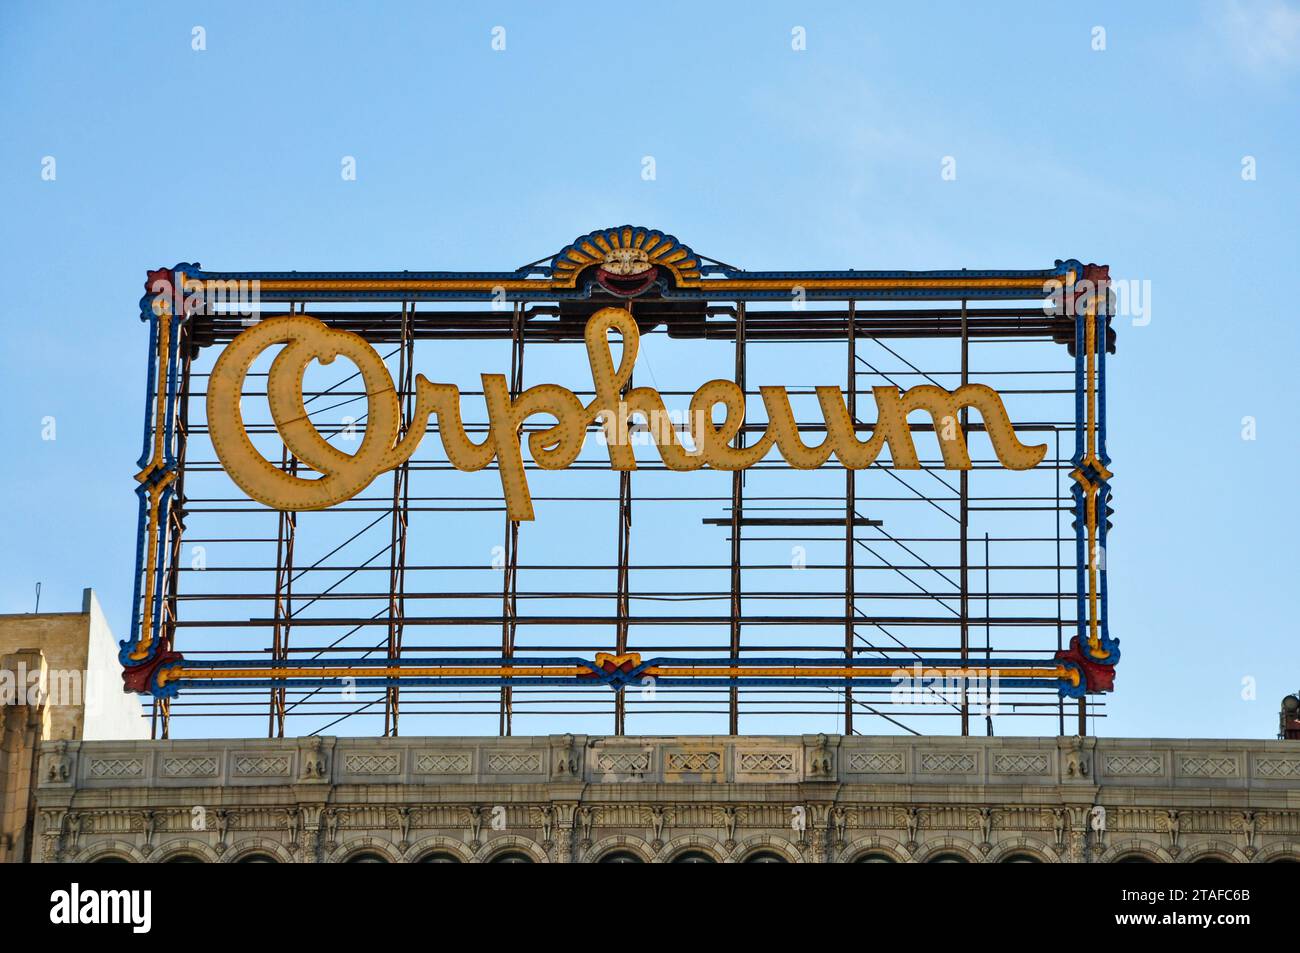 Das berühmte Orpheum Theater-Schild befindet sich im Broadway Theater District in der Innenstadt von Los Angeles, Kalifornien, USA. Stockfoto